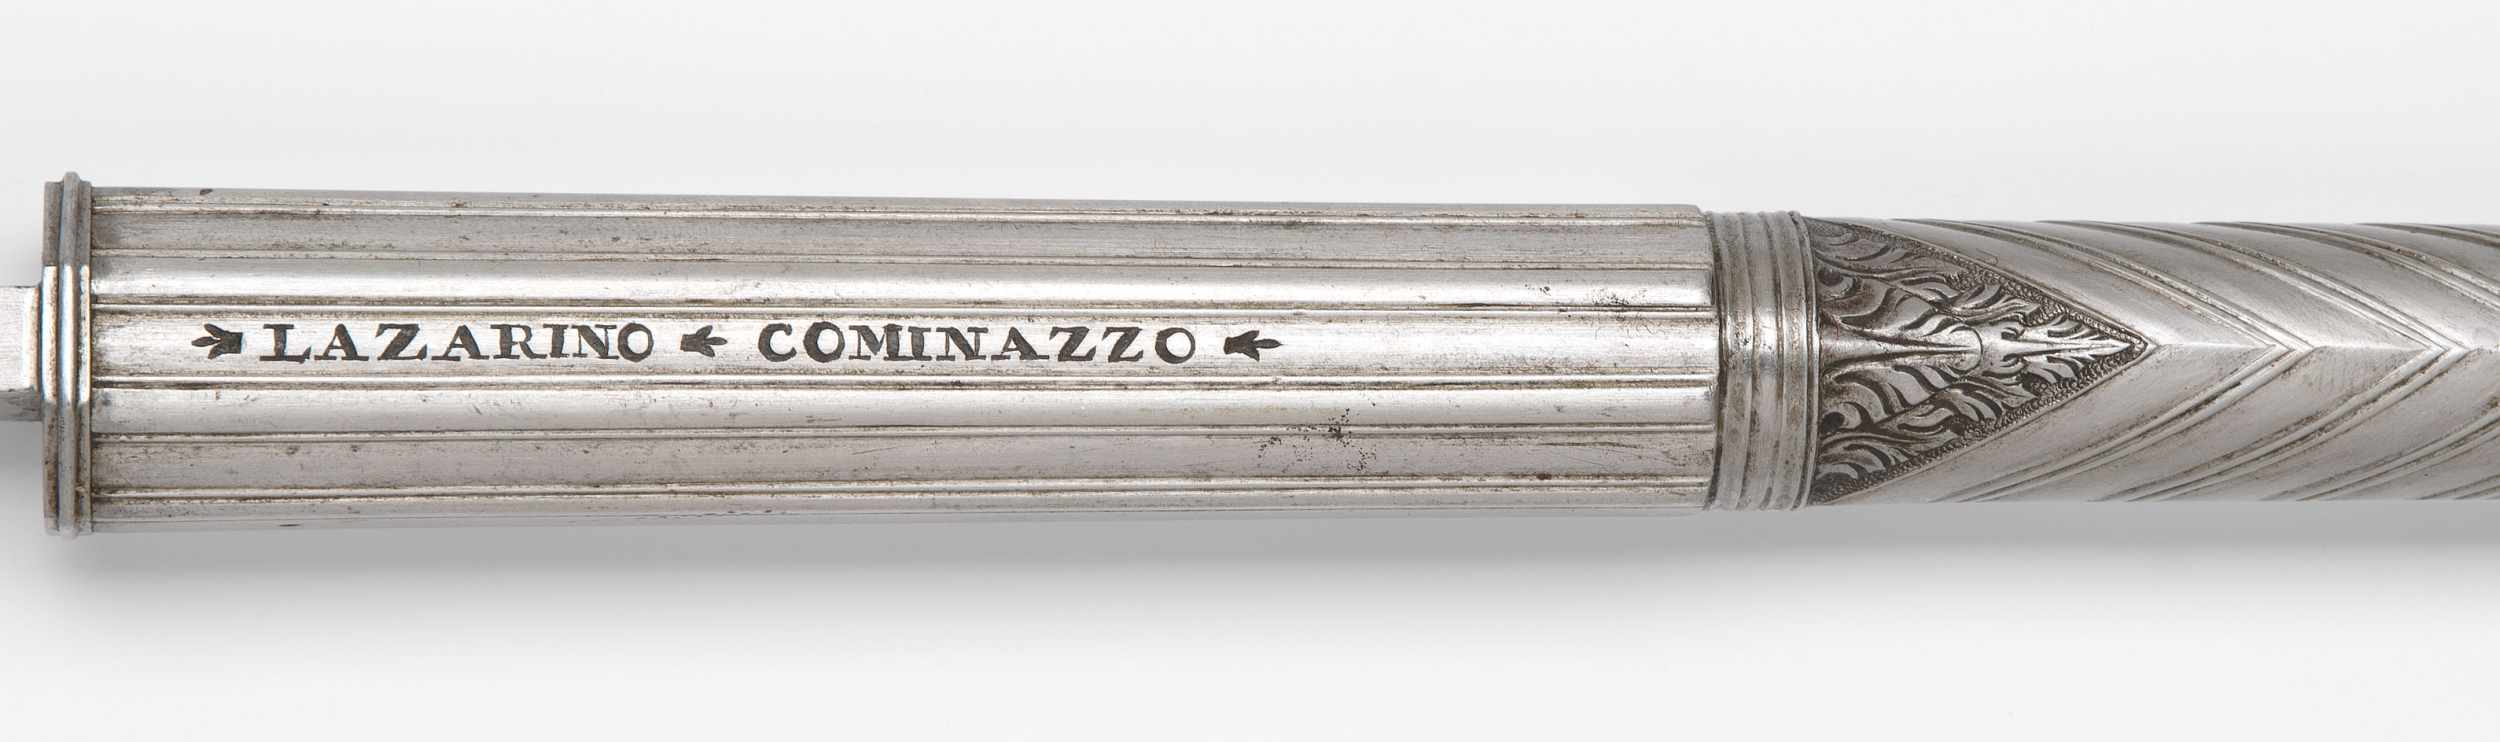 Pistolenlauf Italien, 17.Jh., signiert Lazarino Cominazzo (Gardone, 1580 ca. – 1641). Stahl. - Bild 2 aus 2